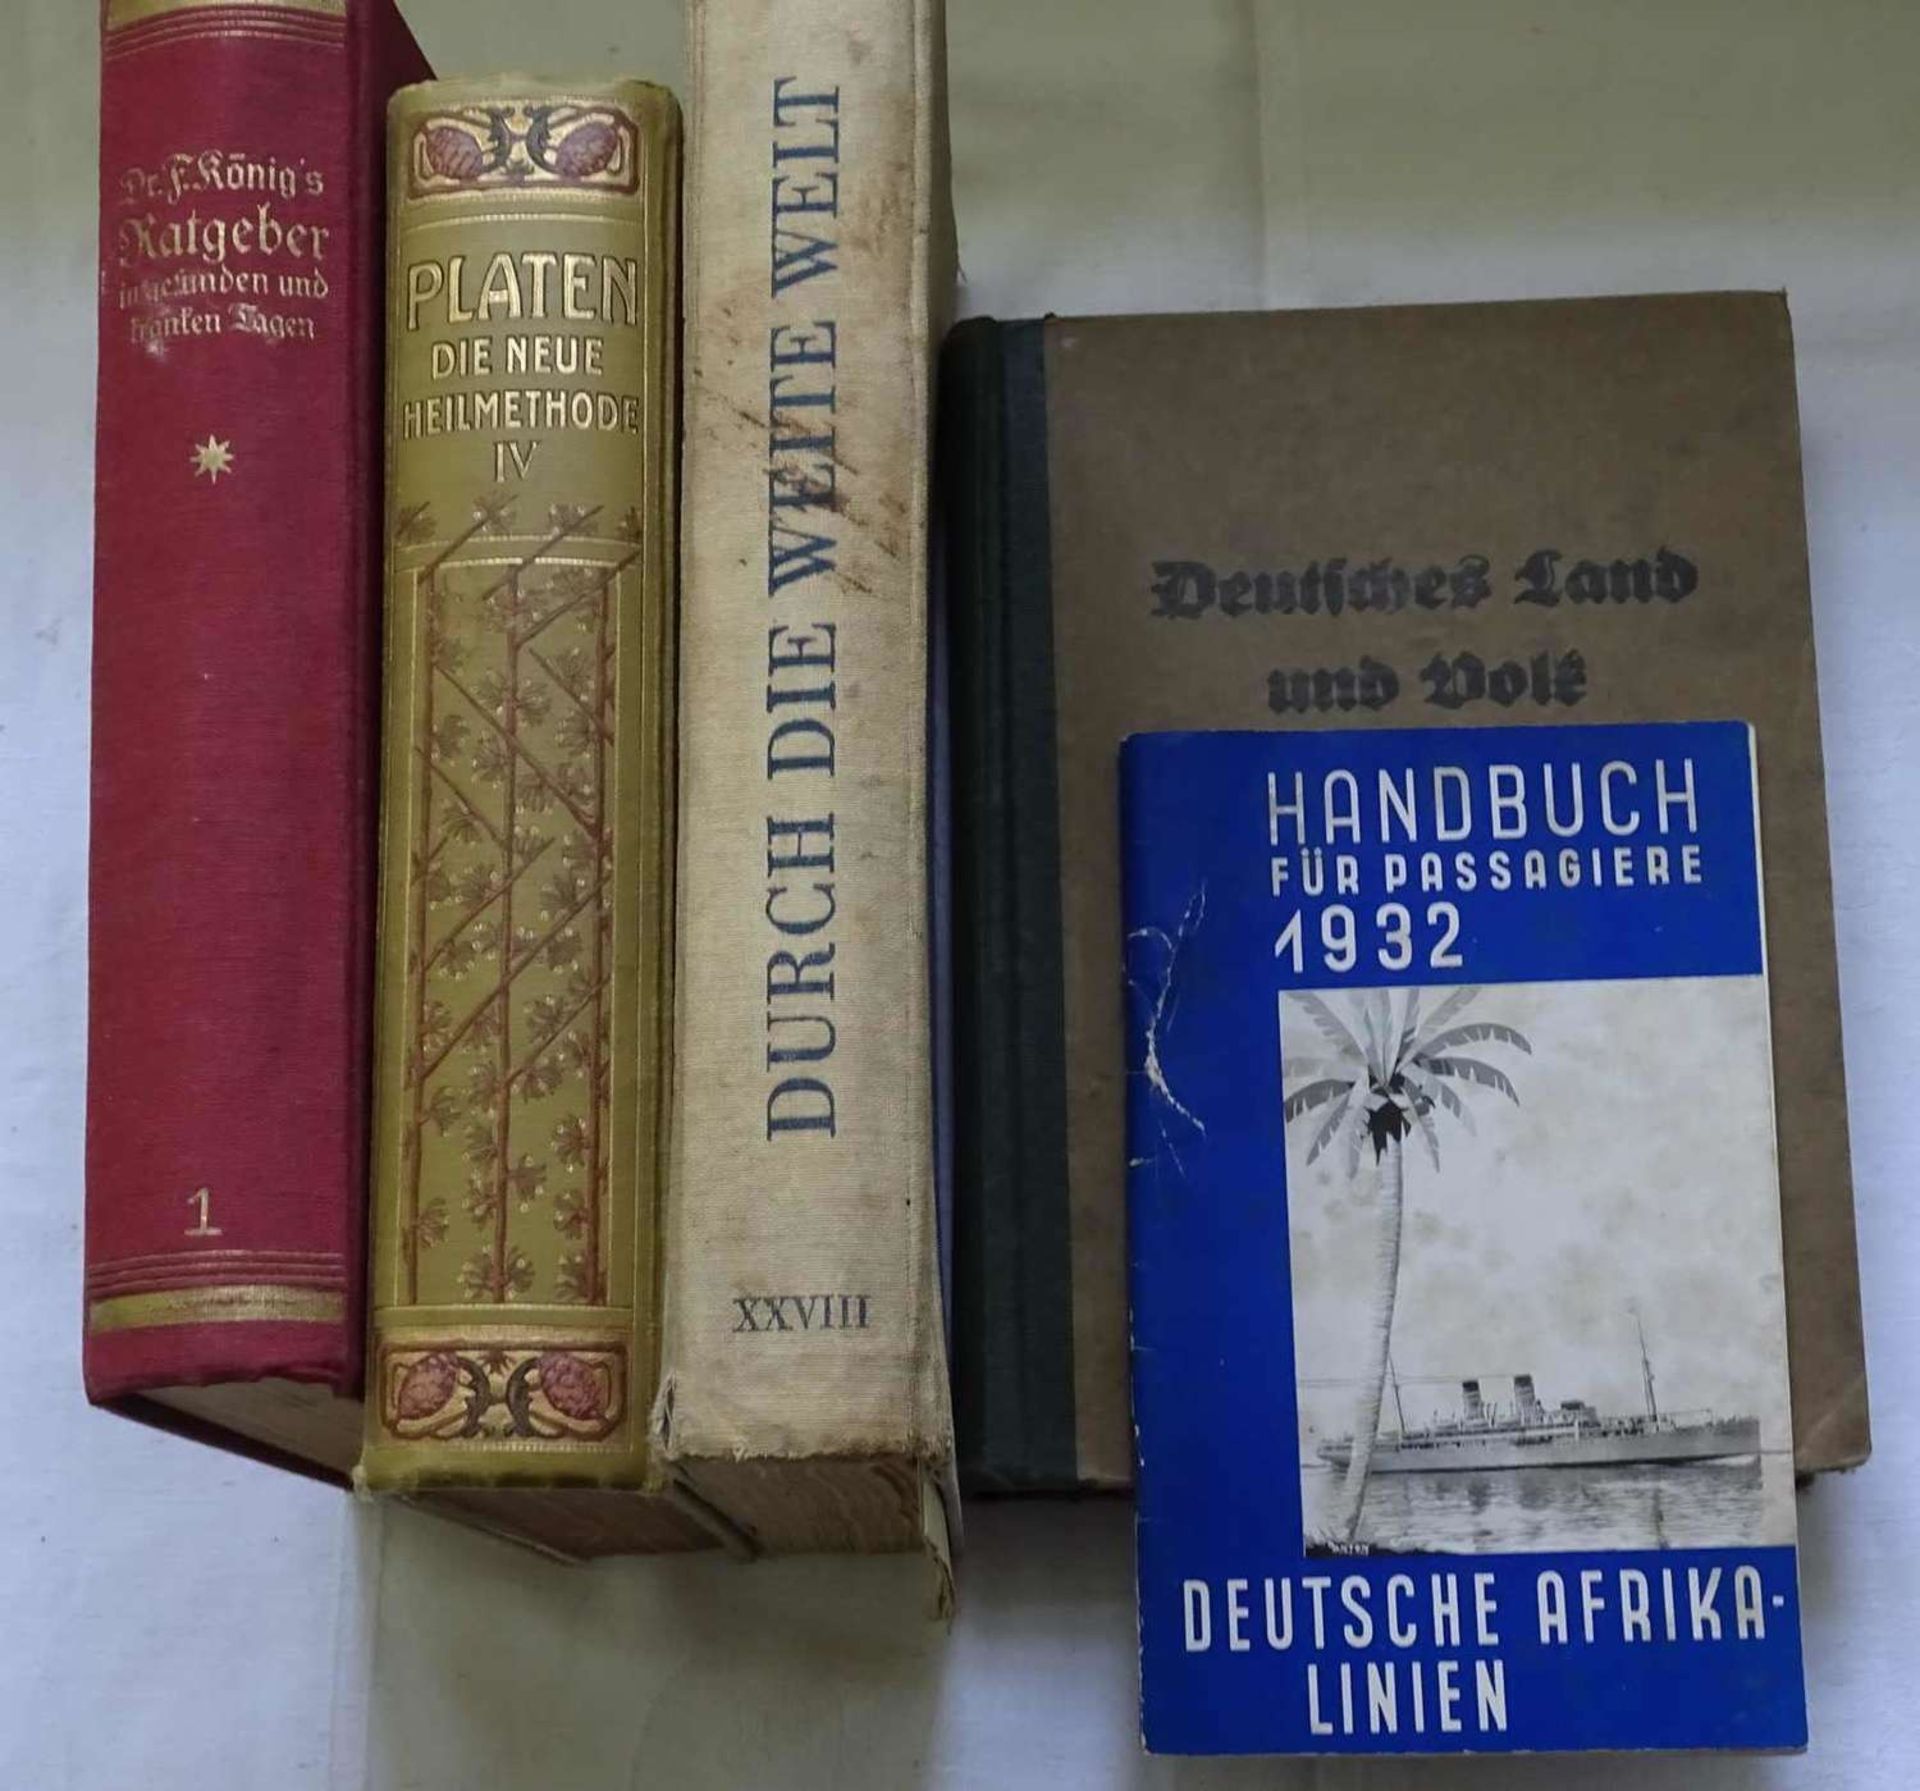 Lot alte Bücher, dabei Deutsches Land und Volk 1930, Platen Die neue Heilmethode 1911, Durch die w